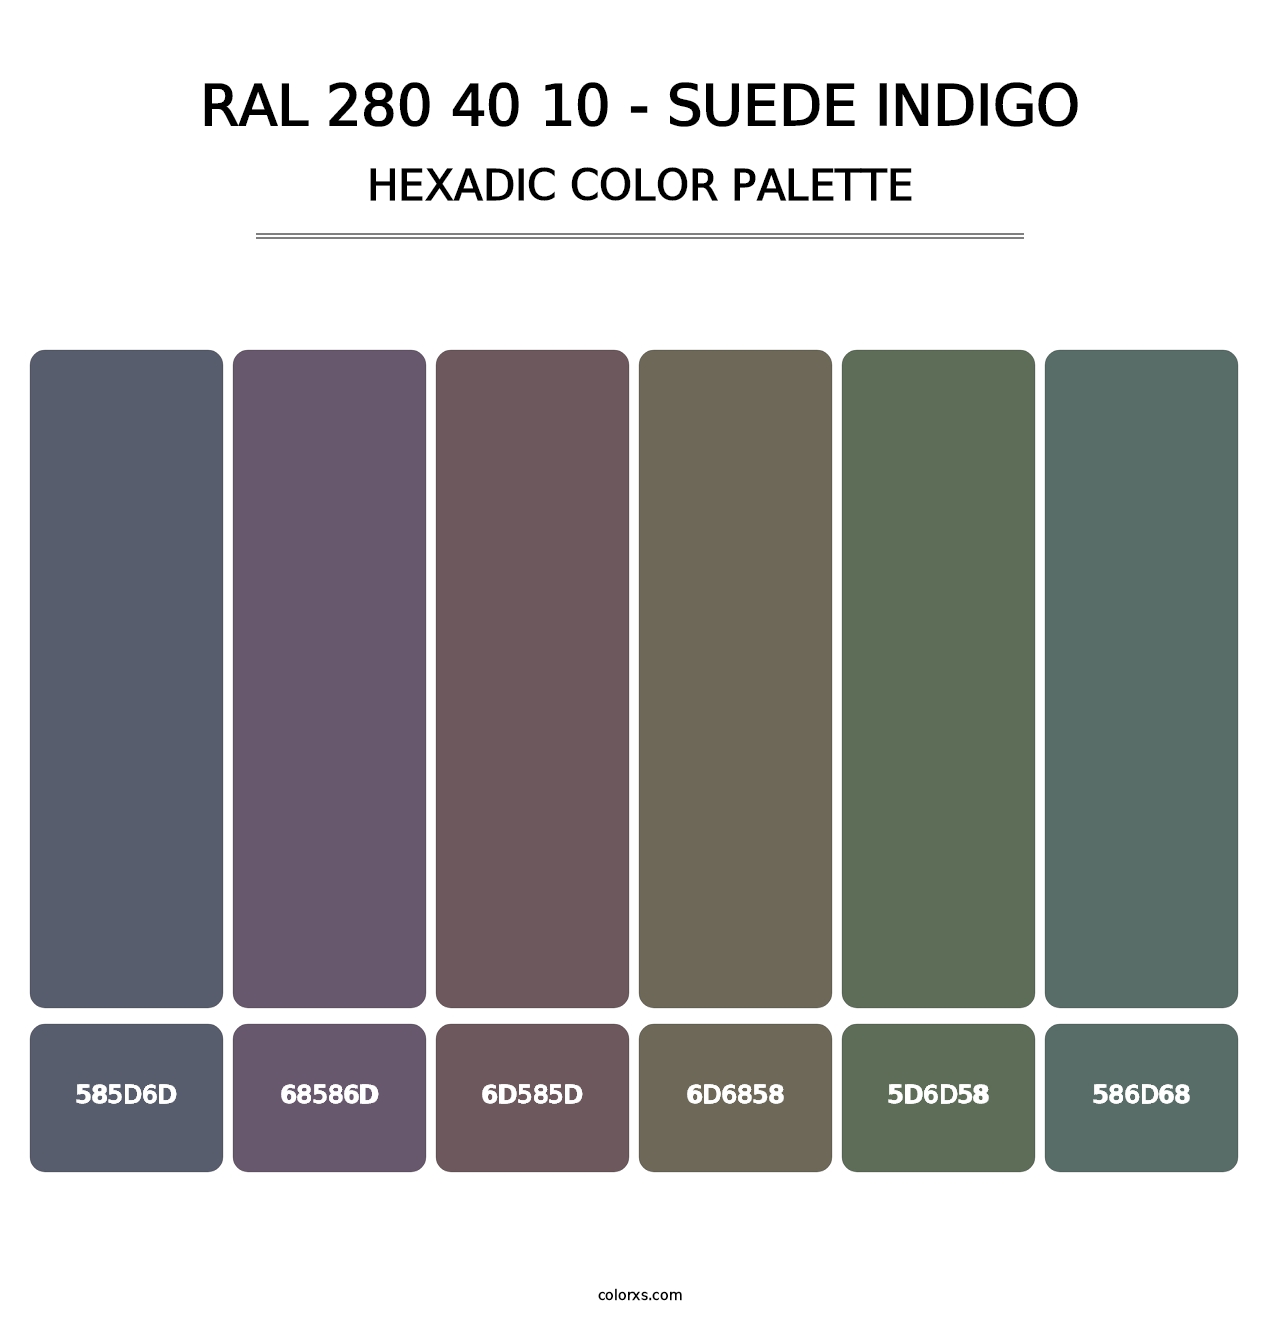 RAL 280 40 10 - Suede Indigo - Hexadic Color Palette